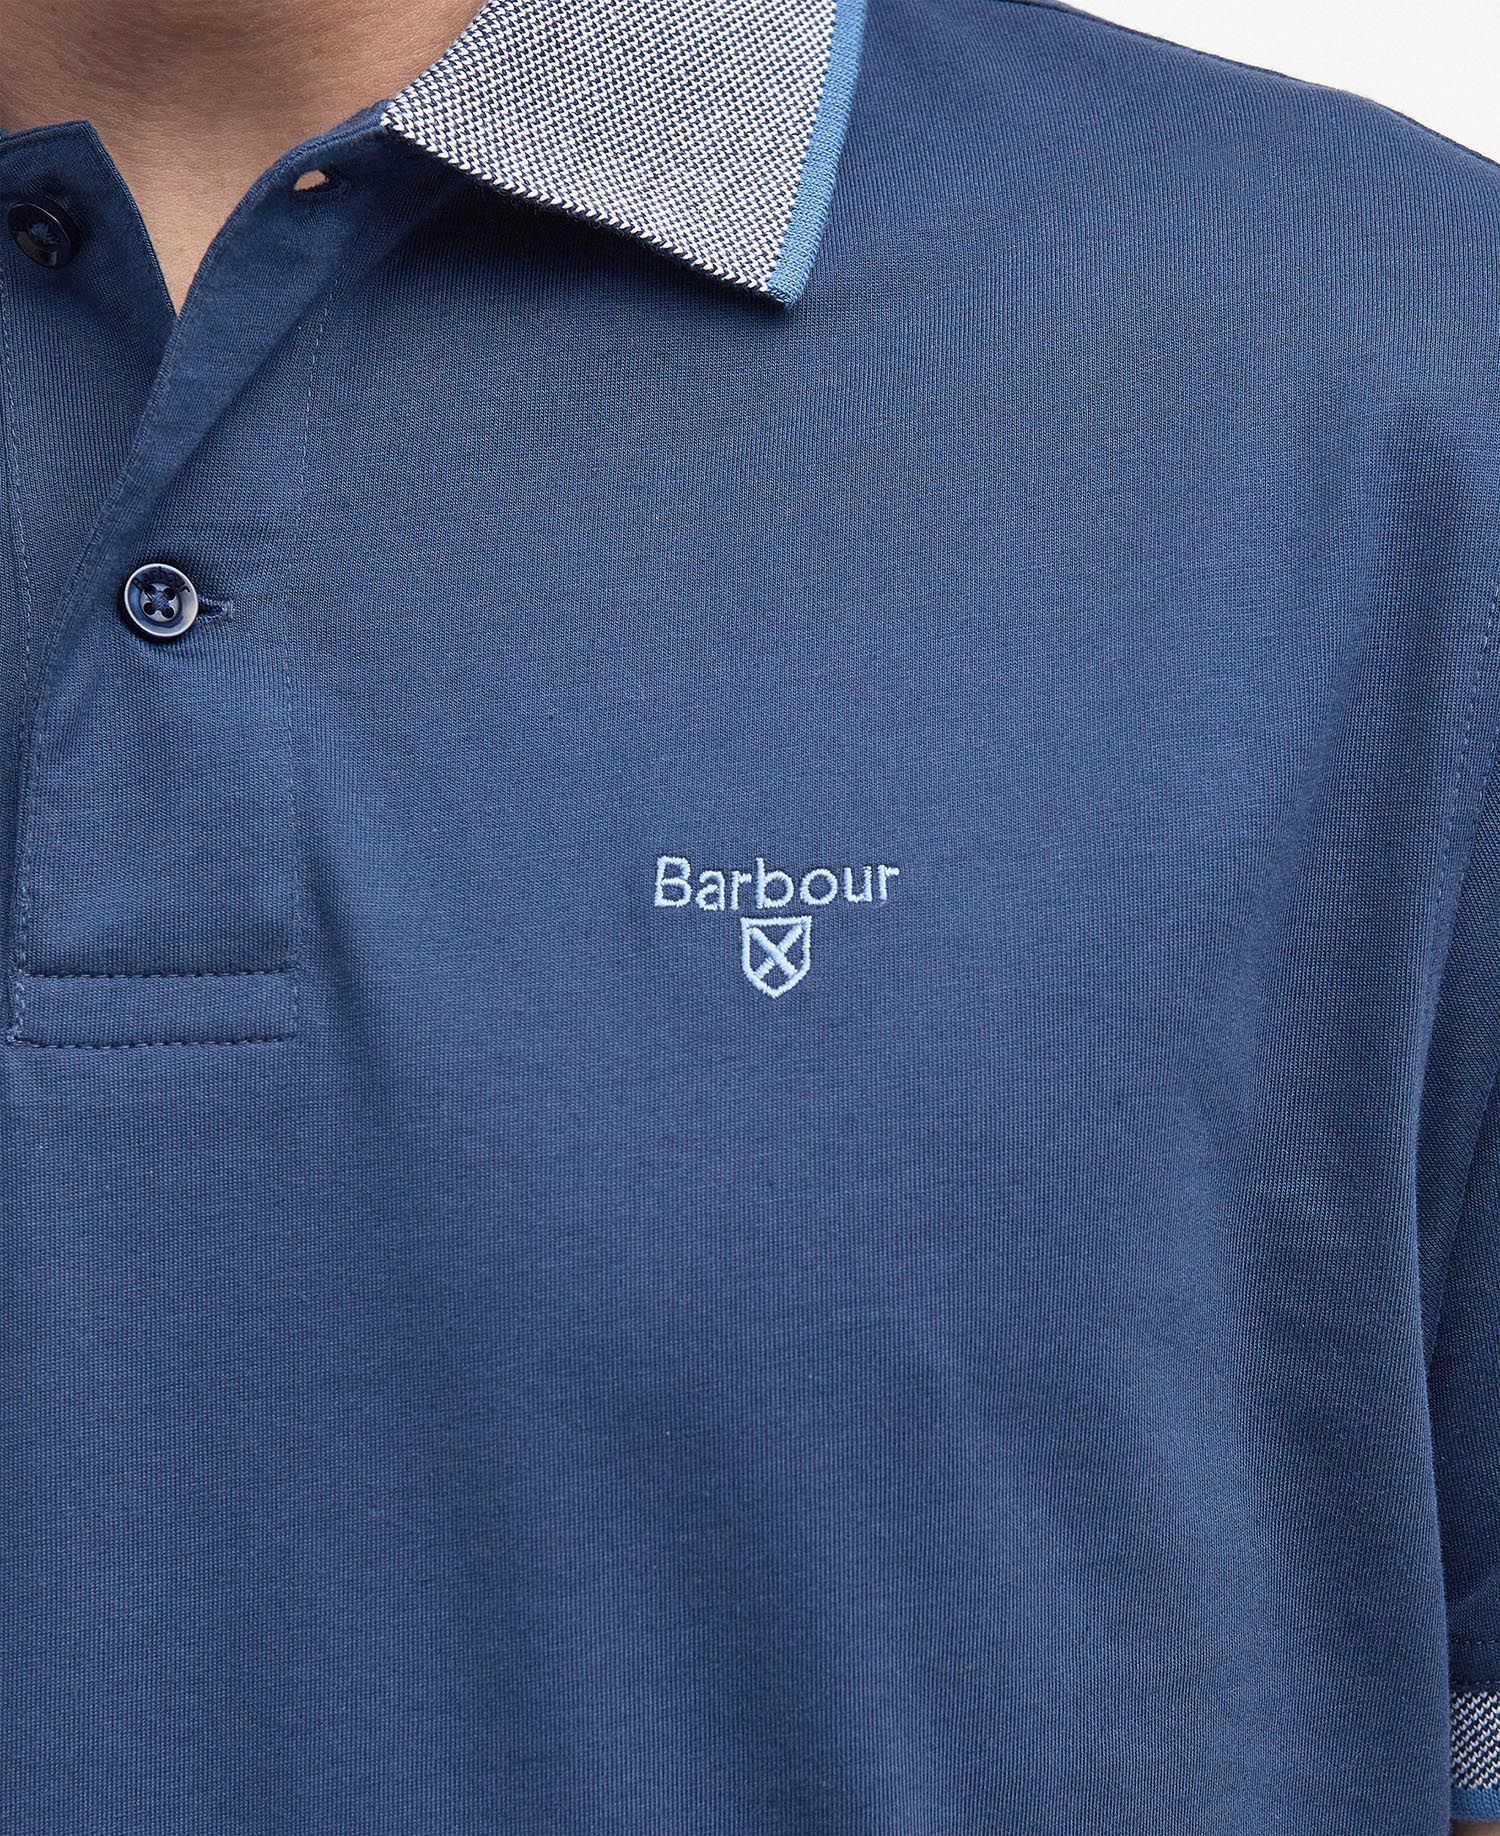 Barbour Cornsay Polo Shirt Navy